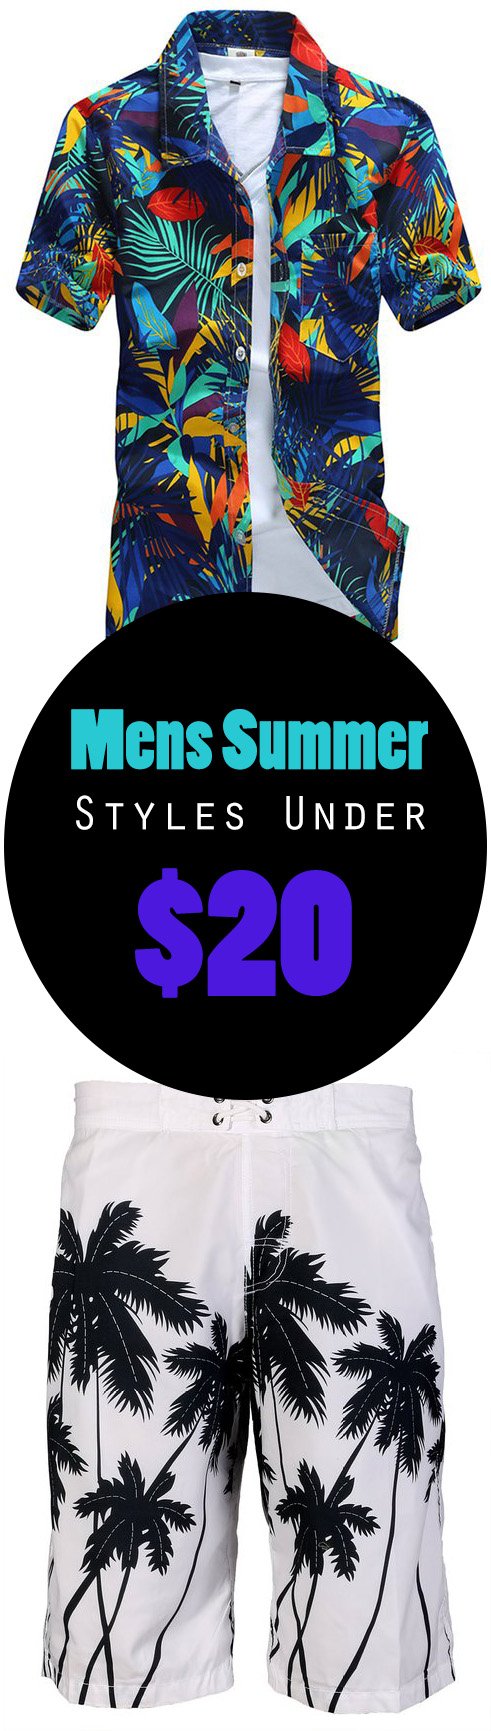 Mens Summer Styles Under $20